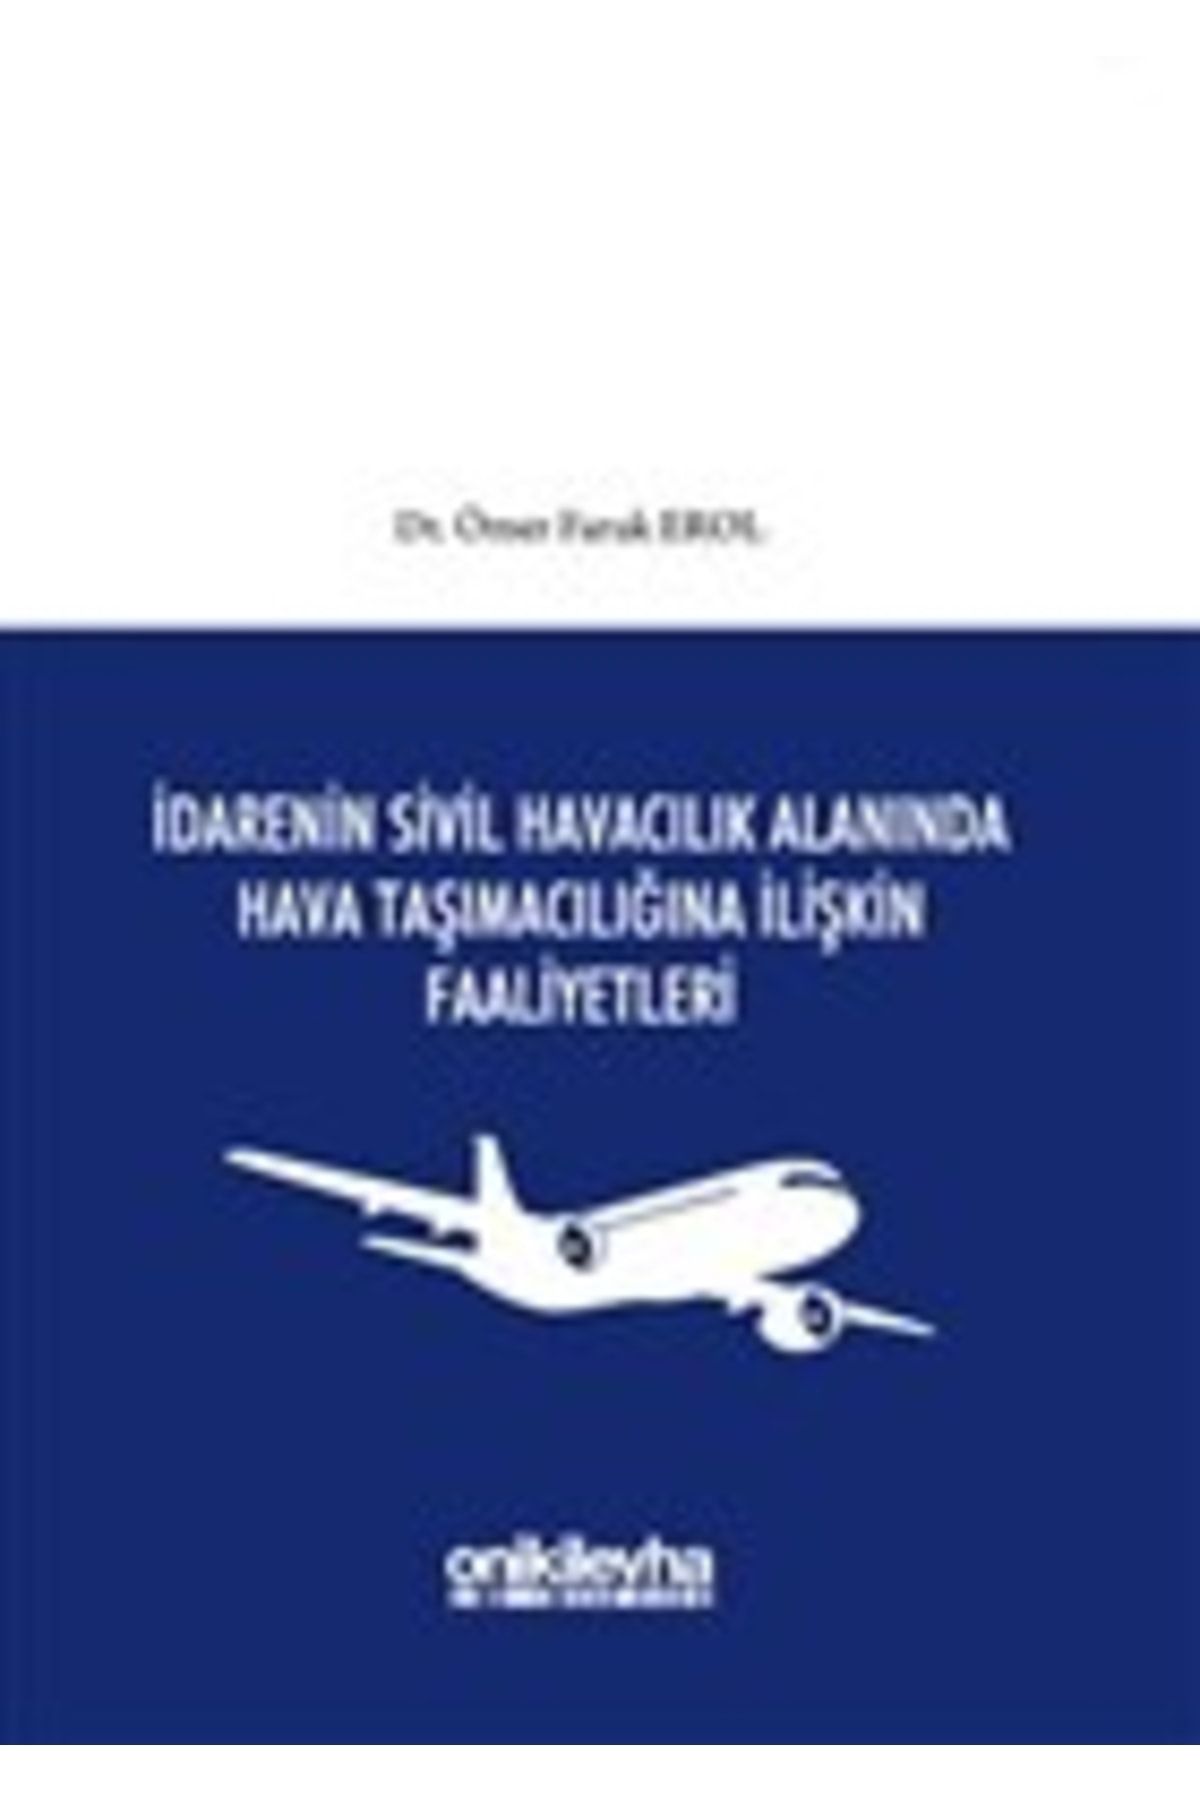 On İki Levha Yayıncılık Idarenin Sivil Havacılık Alanında Hava Taşımacılığına Ilişkin Faaliyetleri